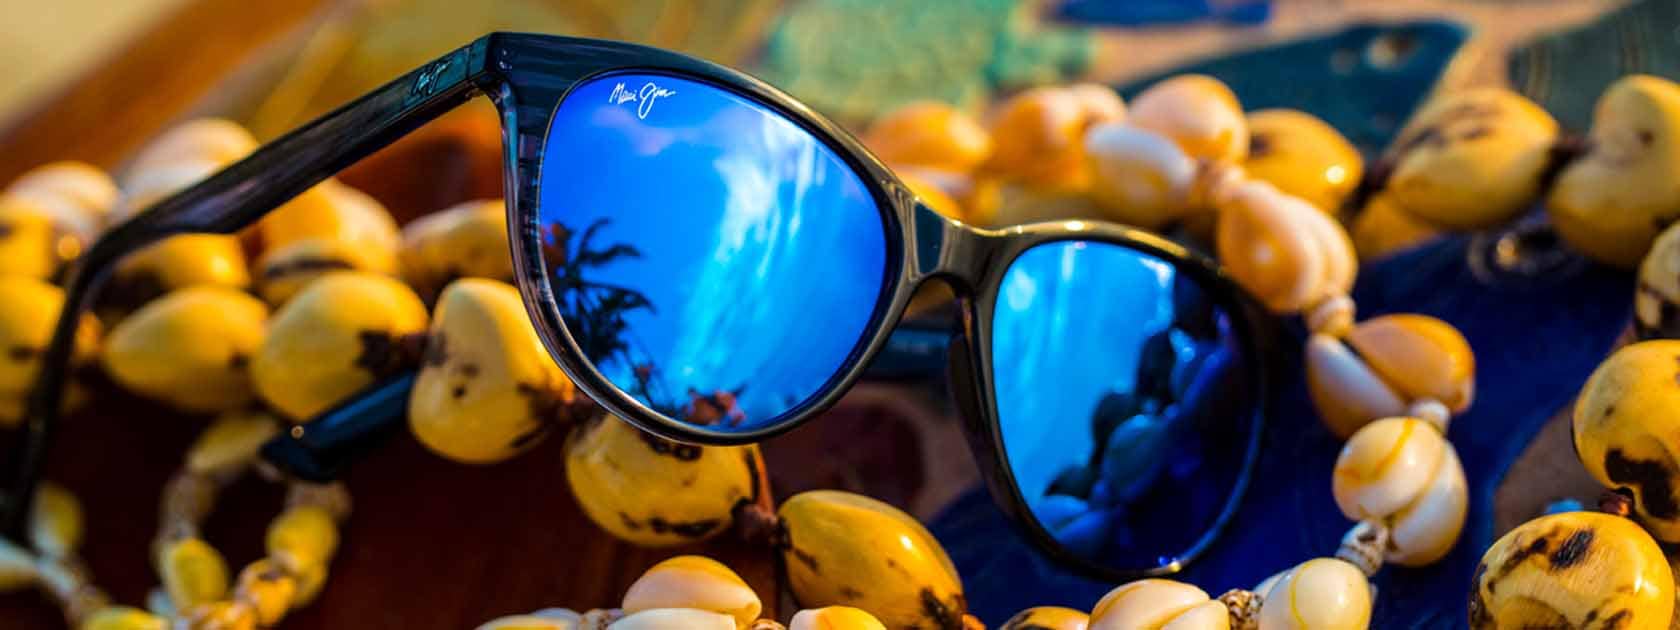 Sonnenbrille mit blauen Gläsern auf Muschelketten